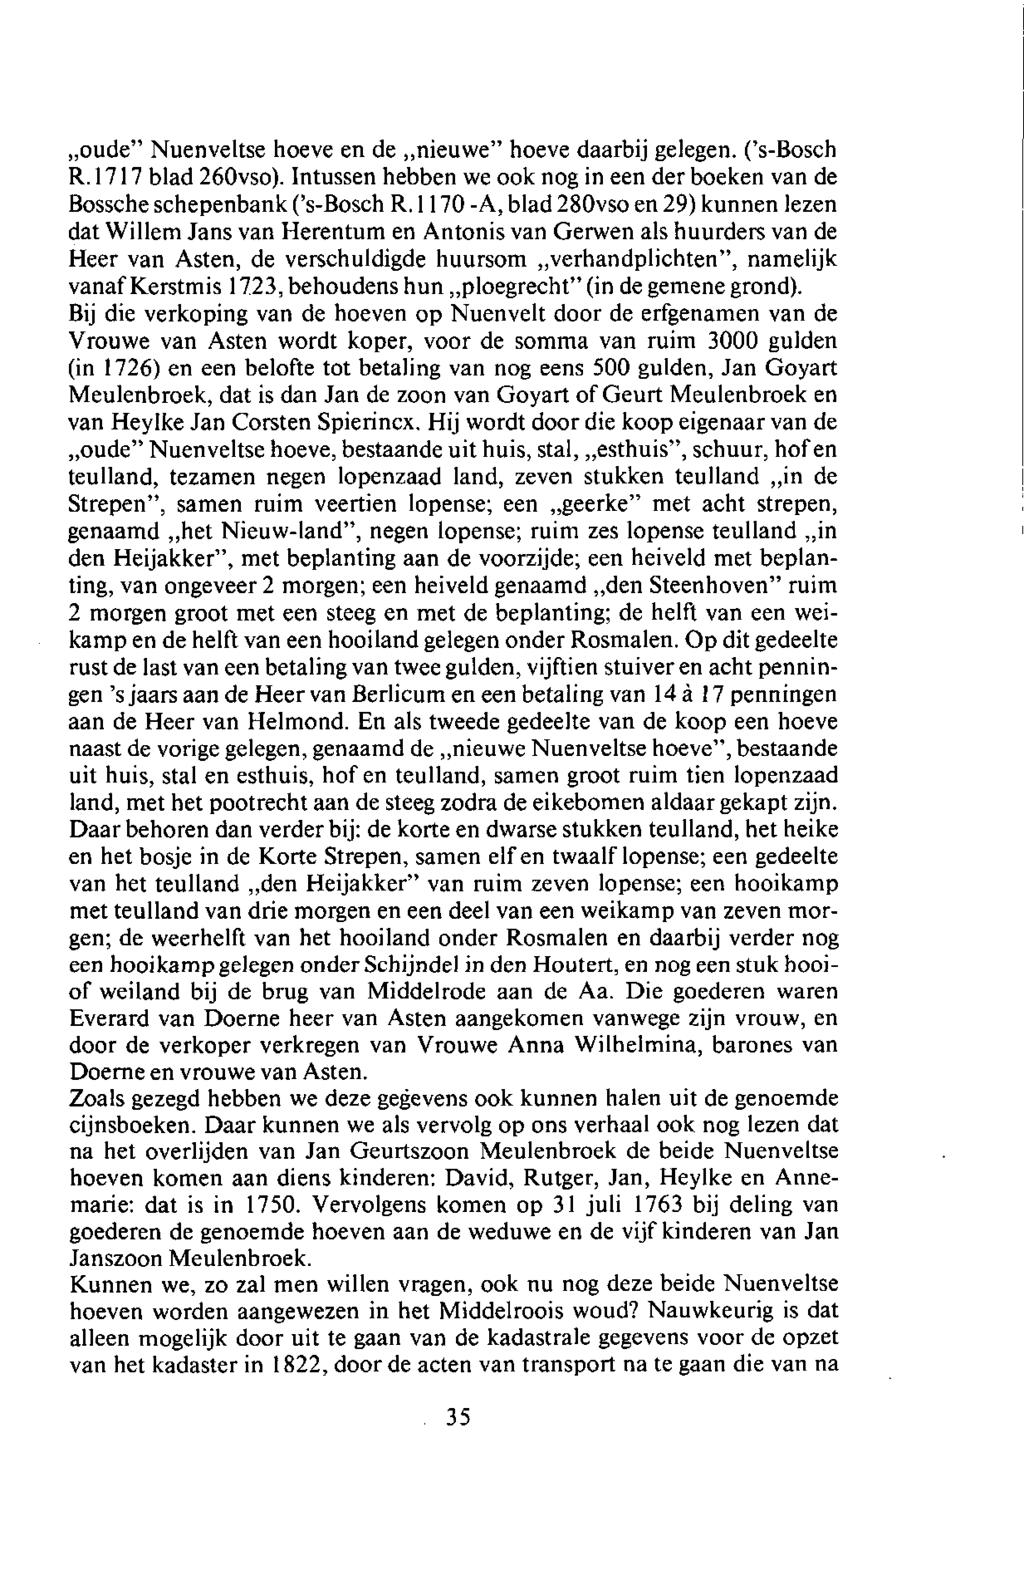 oude" Nuenveltse hoeve en de nieuwe" hoeve daarbij gelegen. ('s-bosch R. 1717 blad 260vso). Intussen hebben we ook nog in een der boeken van de Bossche schepenbank ('s-bosch R.